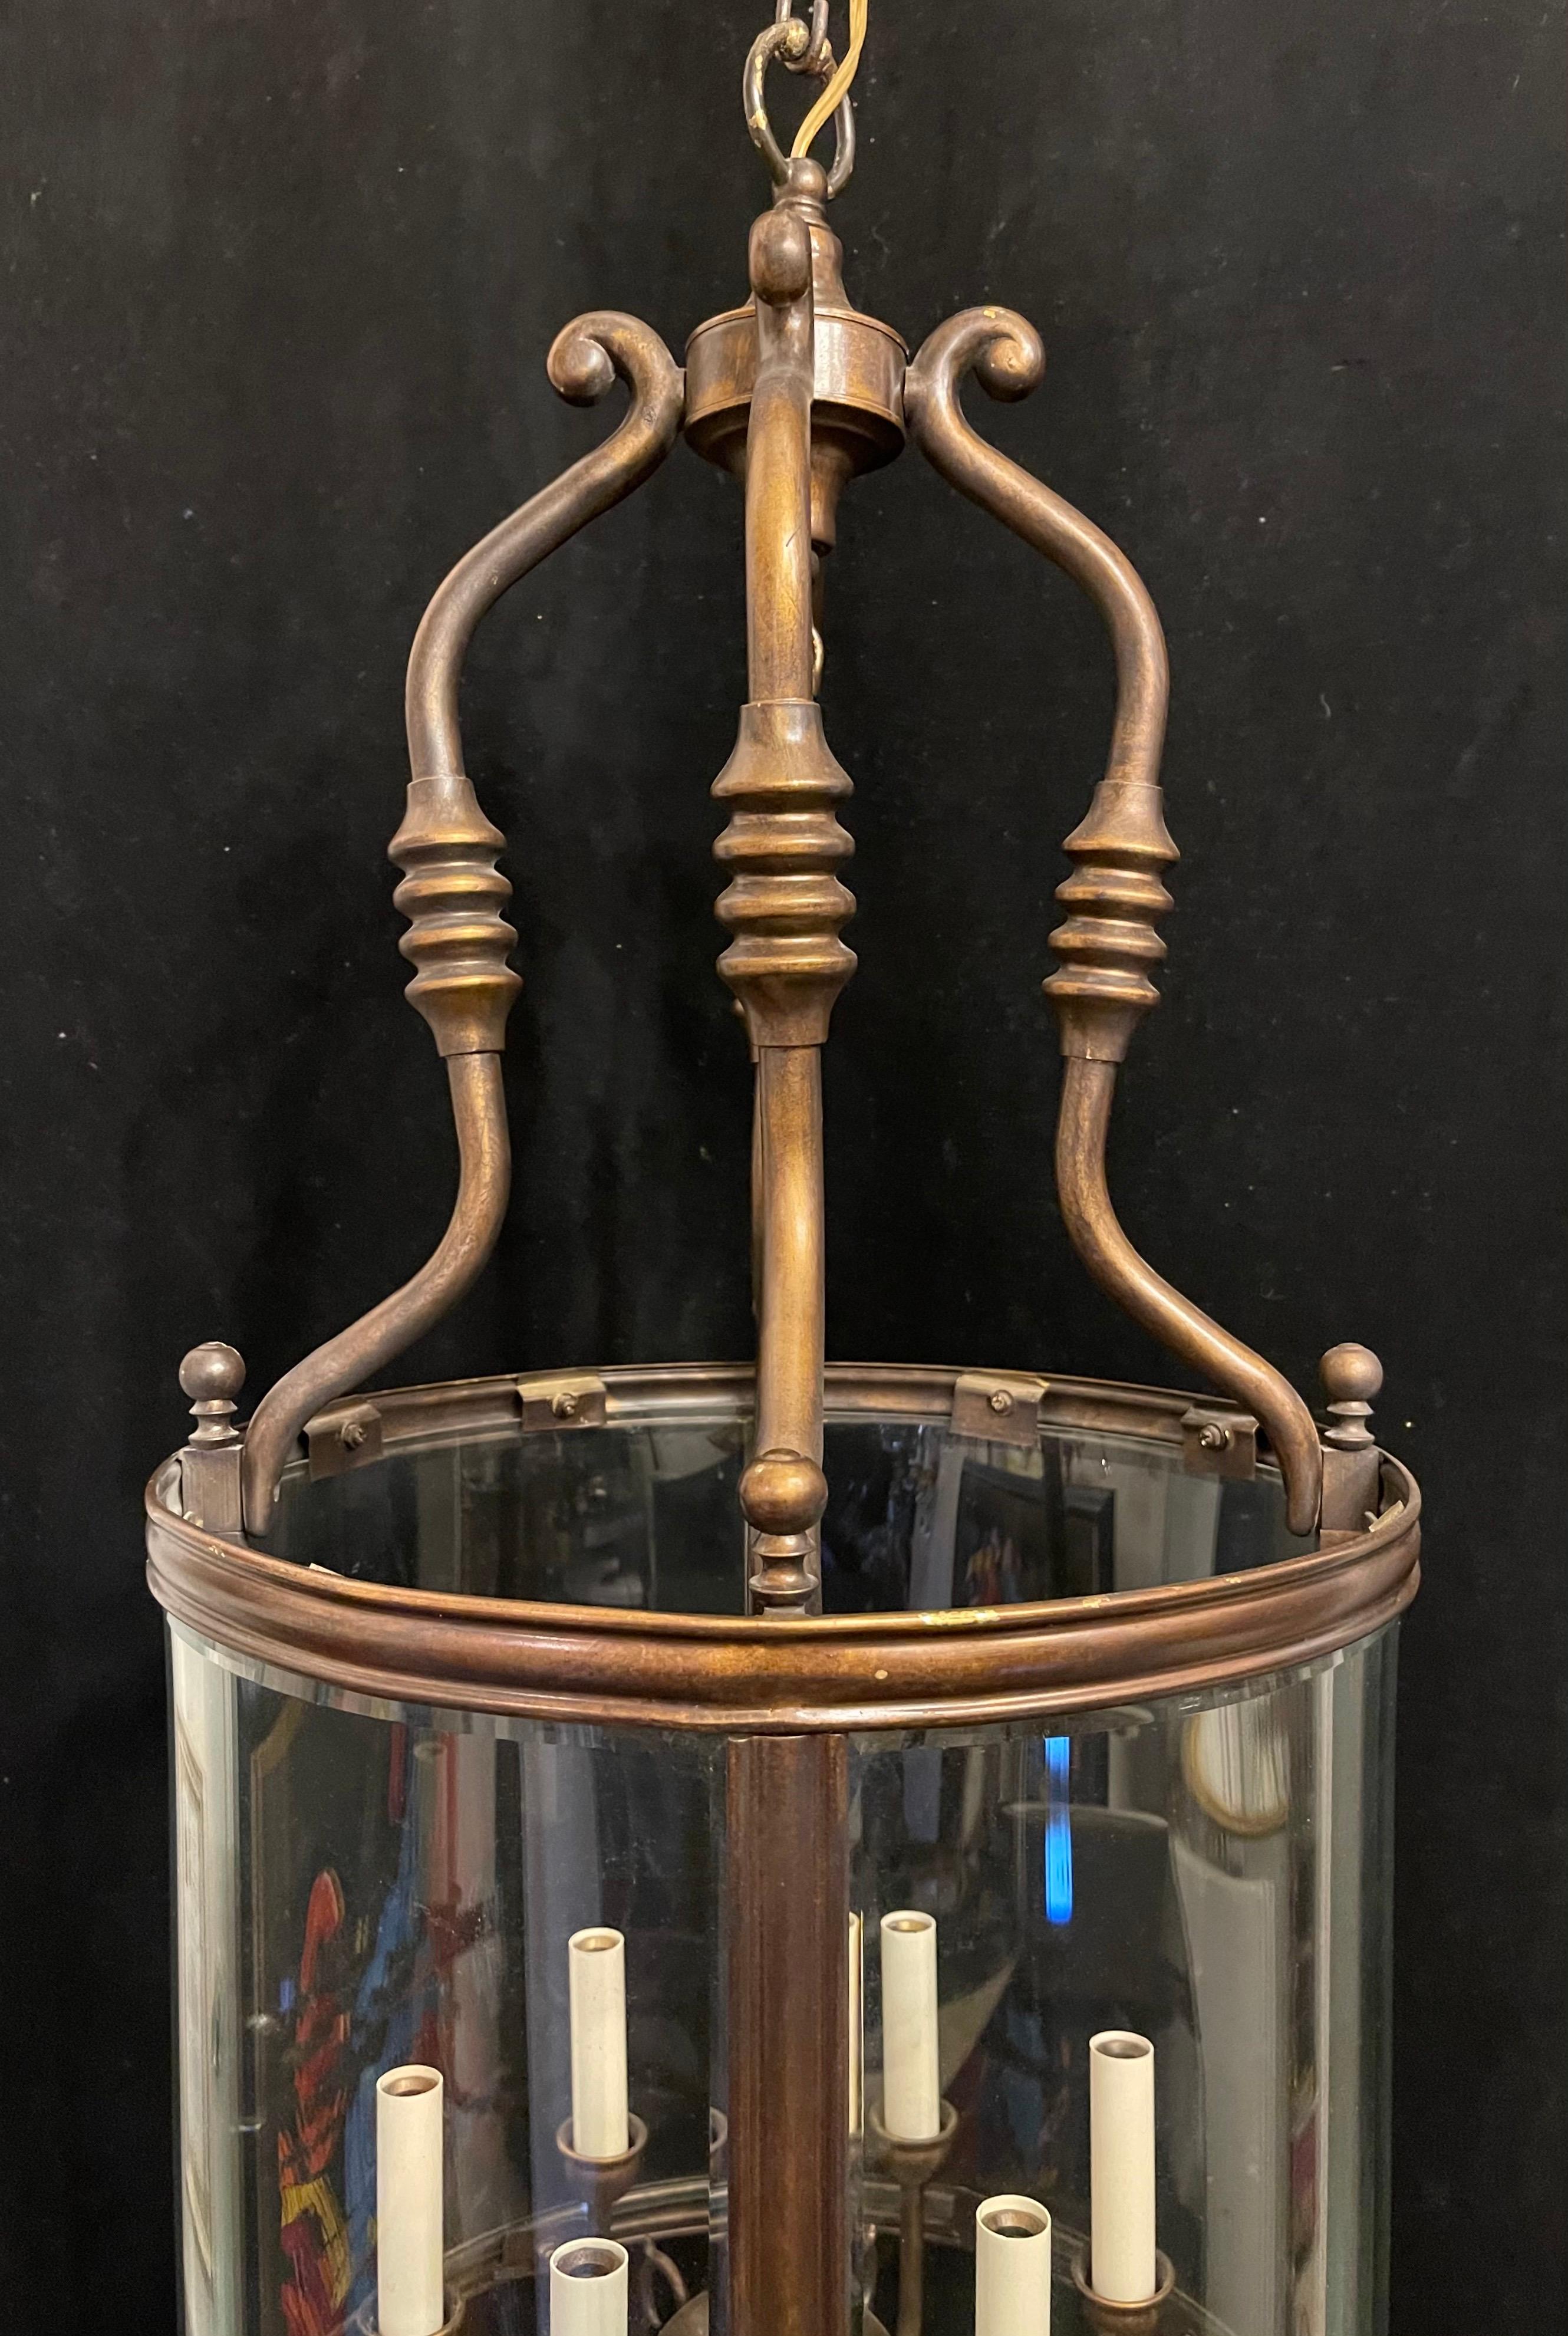 Magnifique lanterne de style Design/One en bronze doré à 6 lumières en verre biseauté incurvé de style Regency.
Remise à neuf et livrée avec chaîne et auvent.